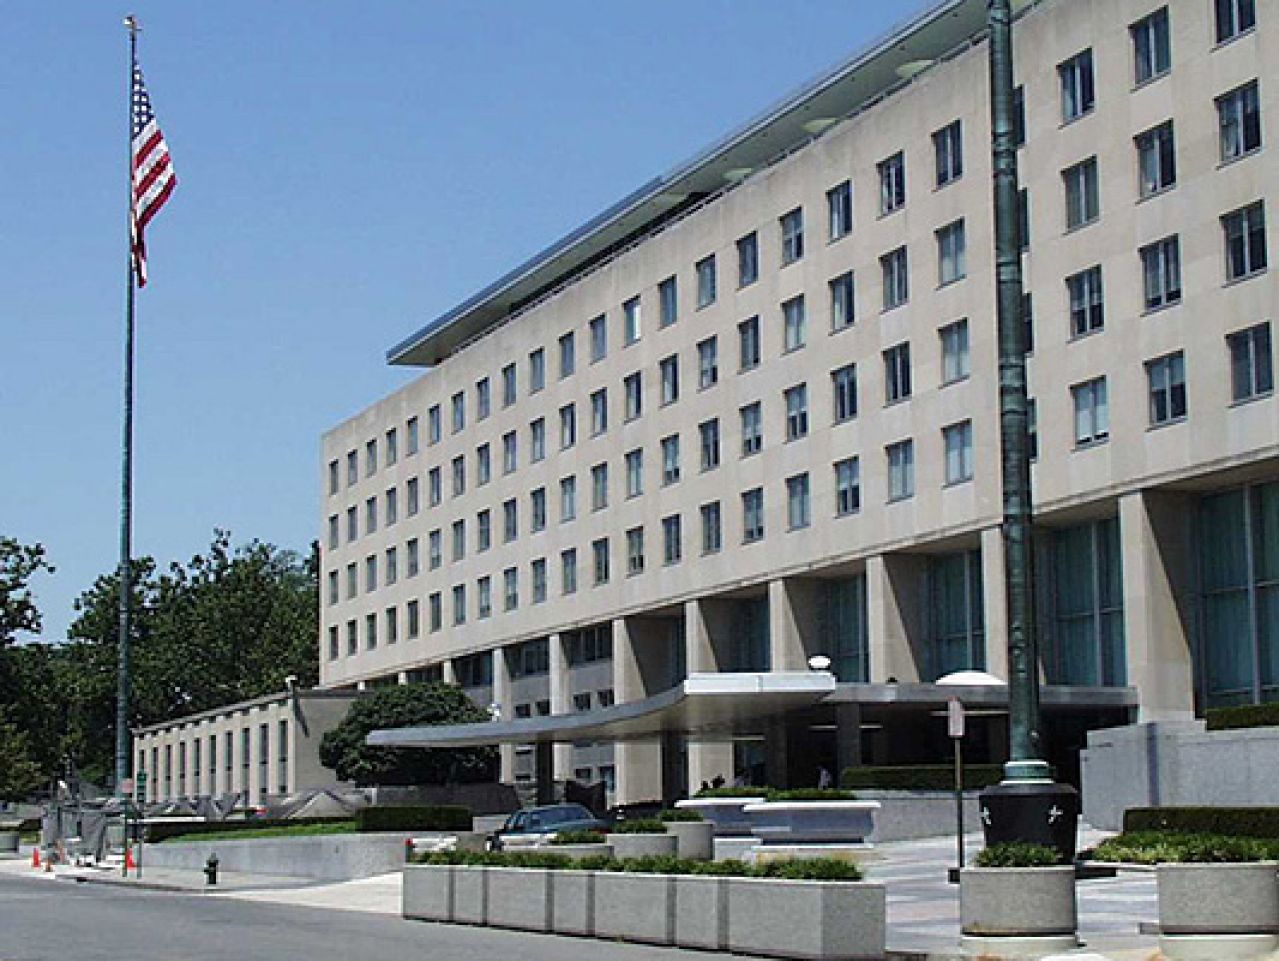 SAD deklasificirale tajne dokumente o bivšoj Jugoslaviji iz 1991. i 1992. godine  